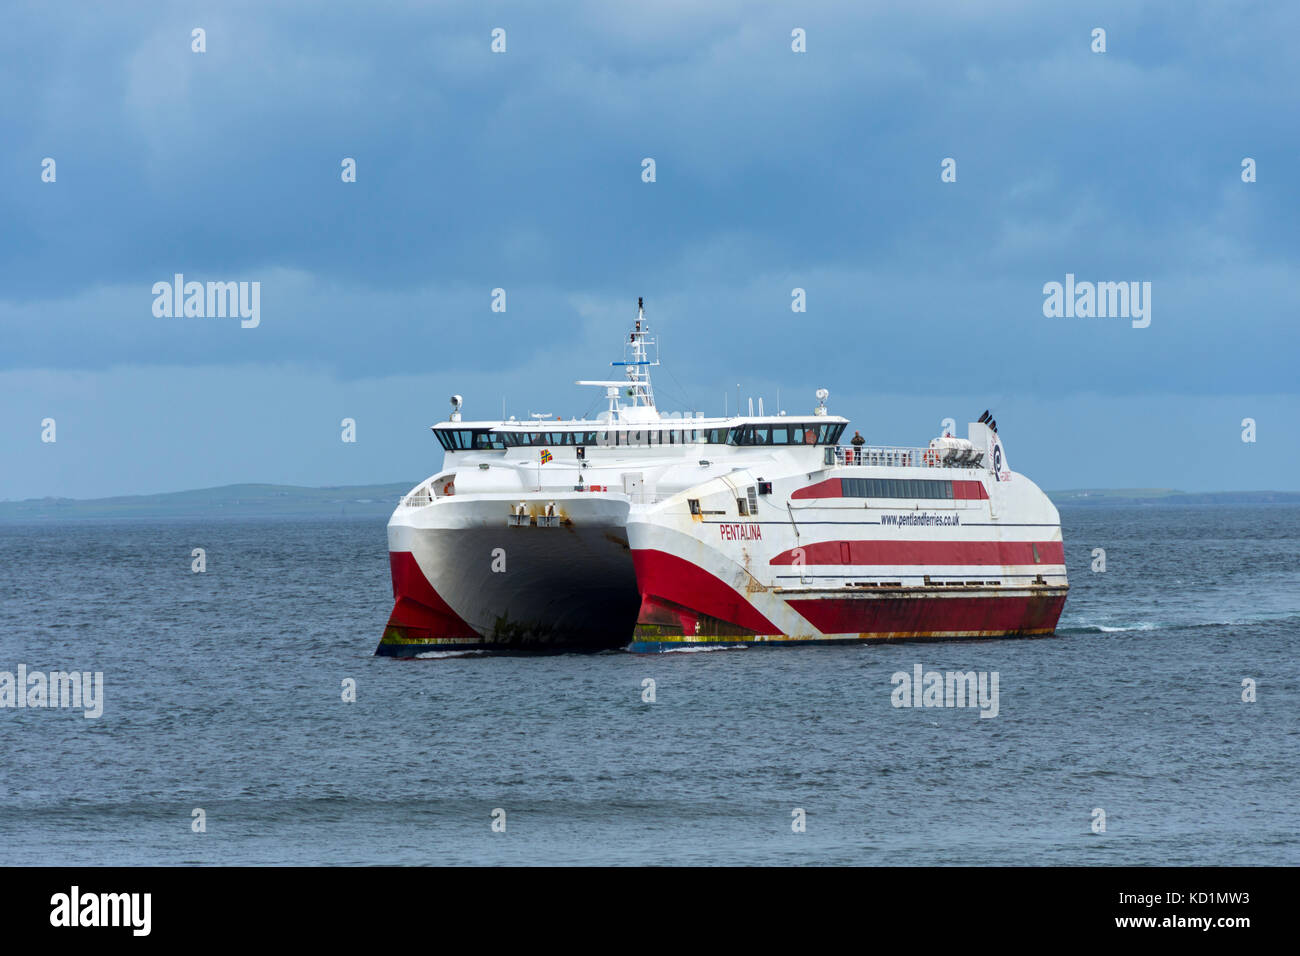 Die Caithness nach Orkney Fähre, der Katamaran 'MV Pentalina' von Pentland Ferries, nähert sich Gills Bay, Caithness, Schottland, Großbritannien Stockfoto